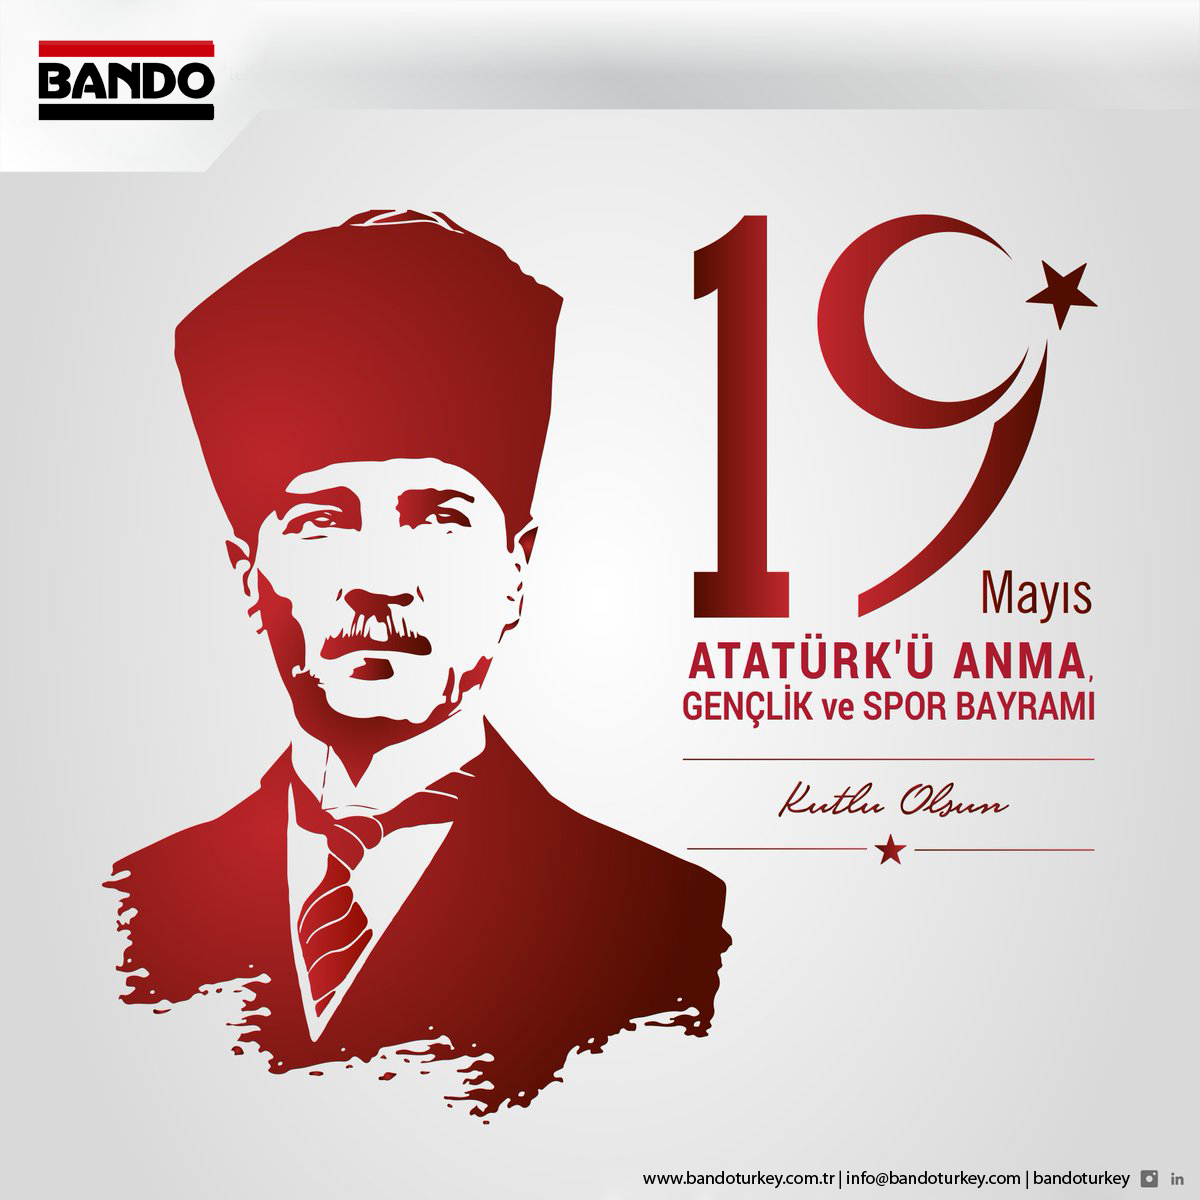 19 Mayıs Atatürk'ü Anma, Gençlik ve Spor Bayramınız kutlu olsun. Ata’mıza en derin sevgi ve saygılarımızla...